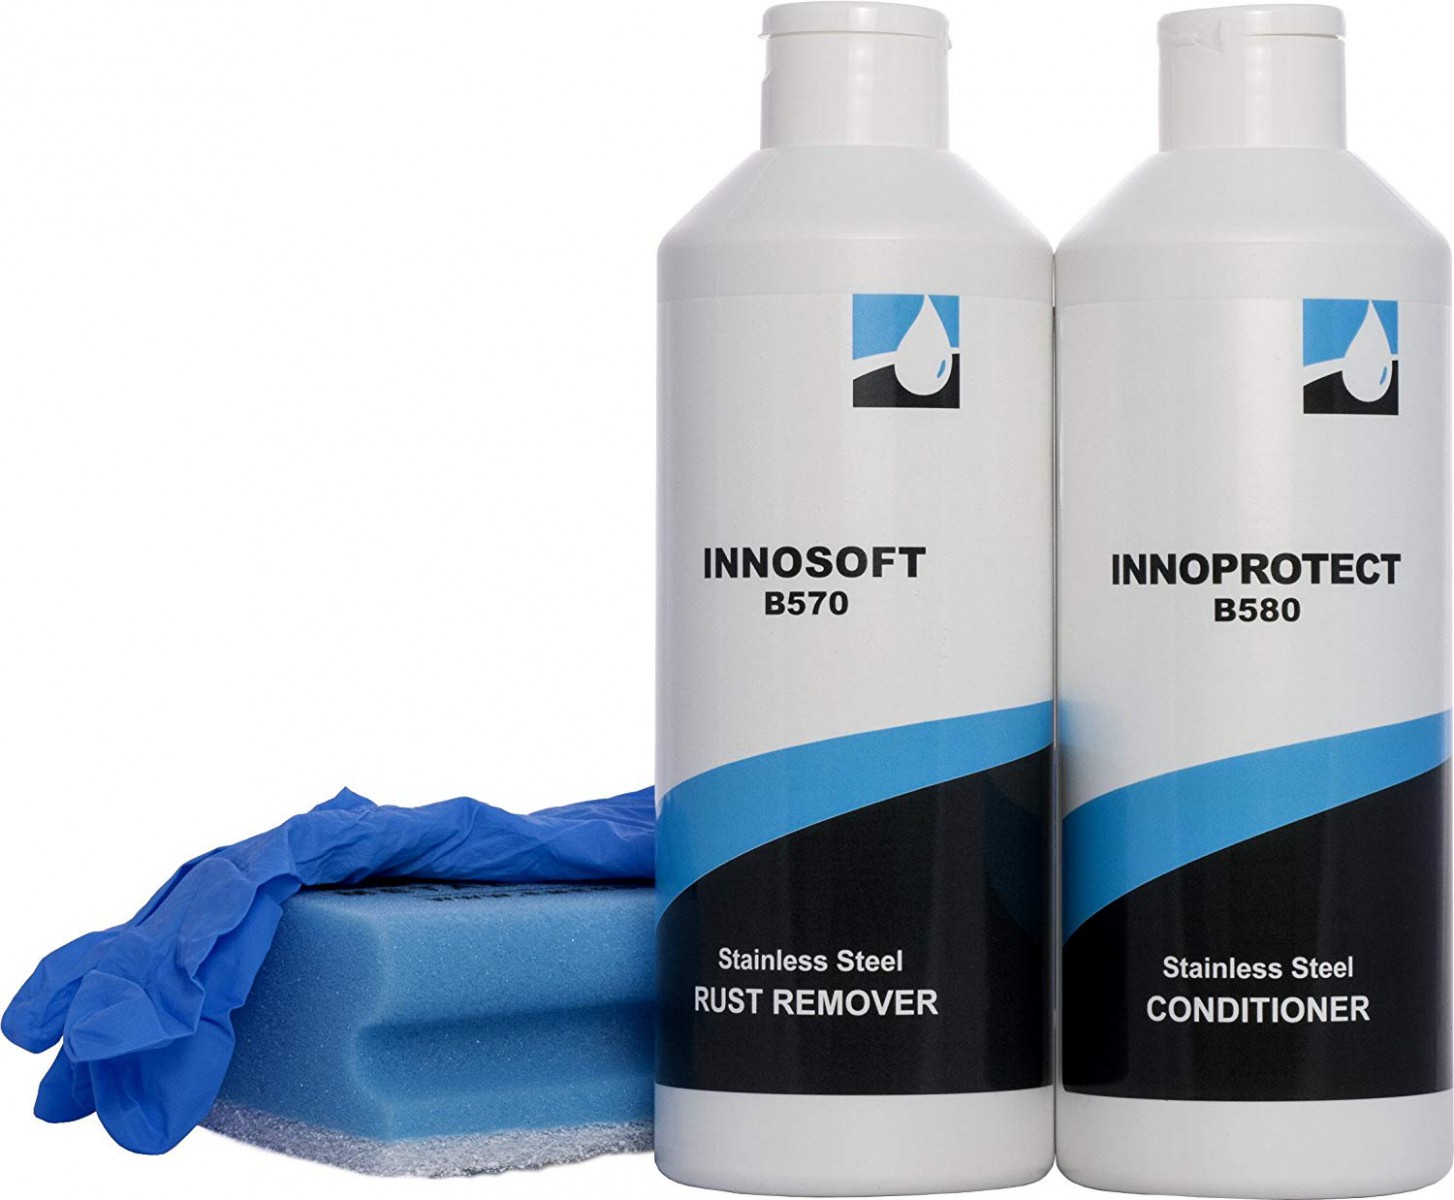 Общие указания для надёжного применения Иннософта (Innosoft B570)